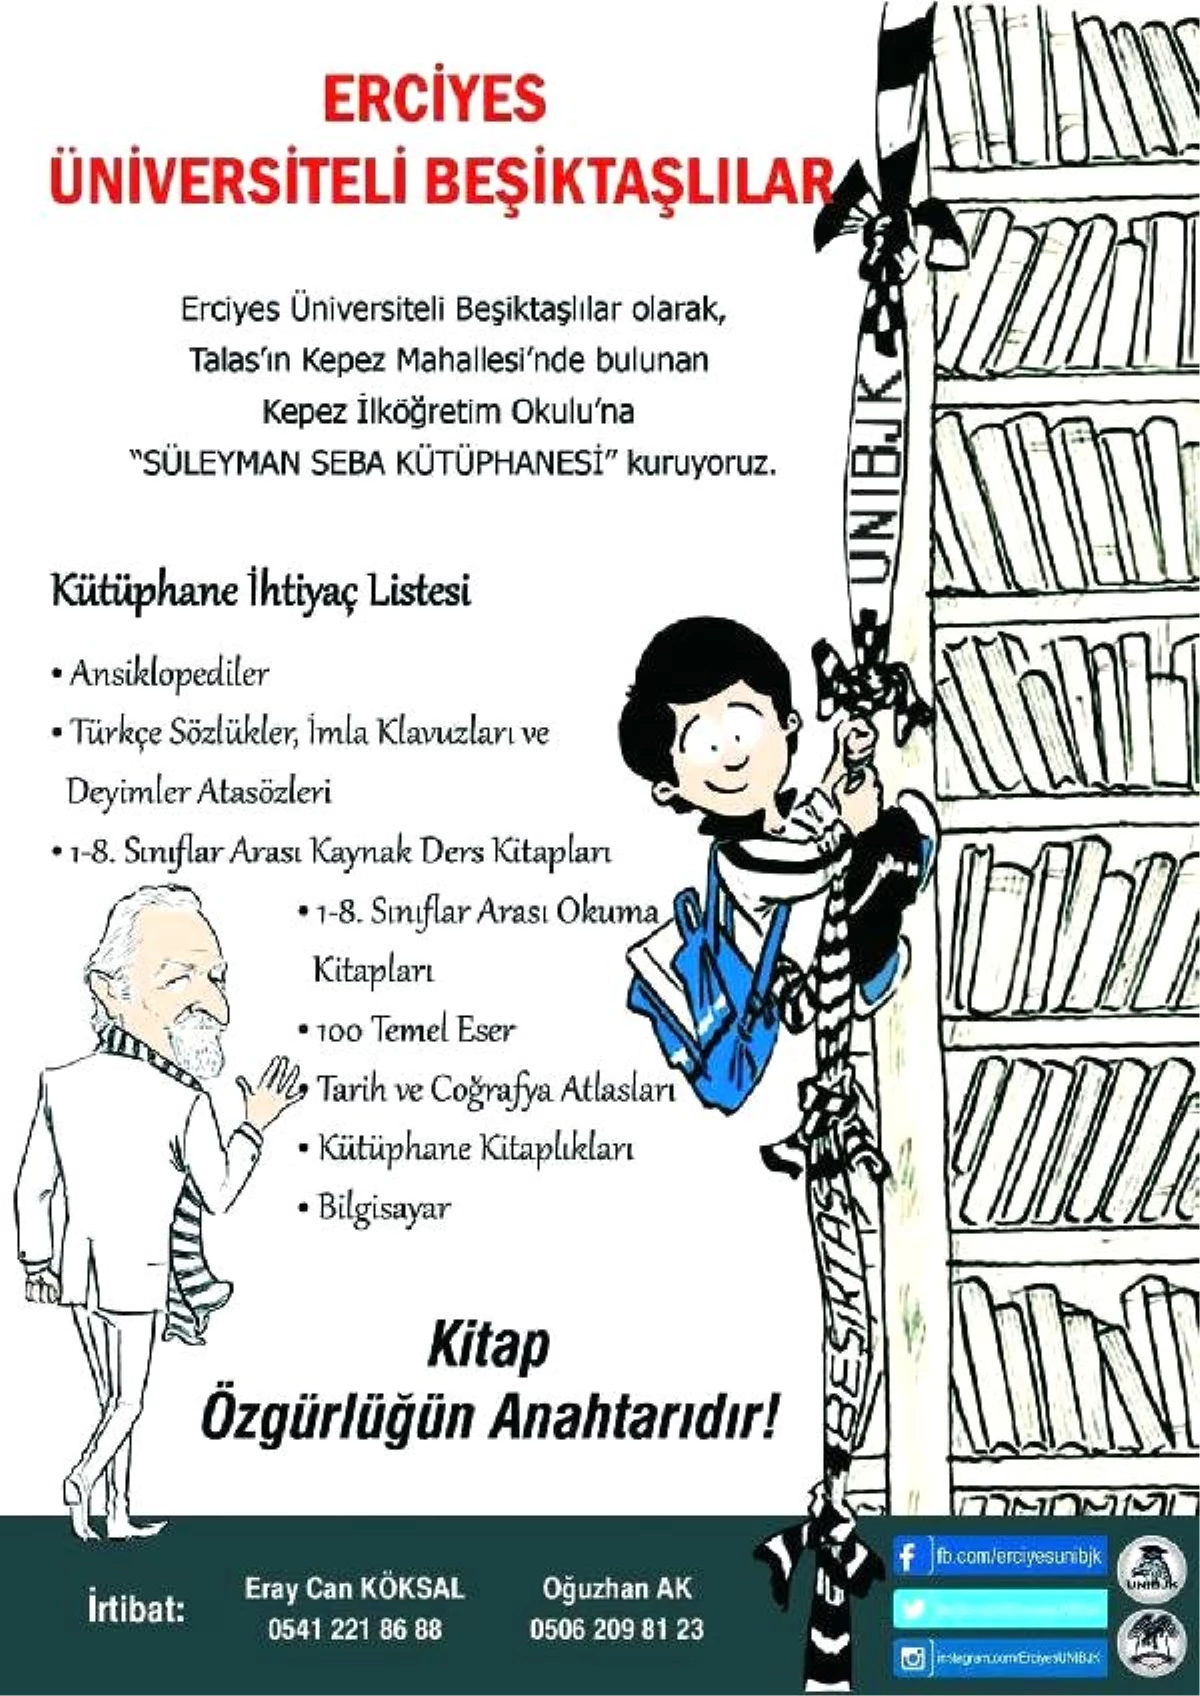 Erciyes Üniversitesi\'nin Beşiktaşlılar\'ı İlkokulda Süleyman Seba Kütüphanesi\' Kuruyor